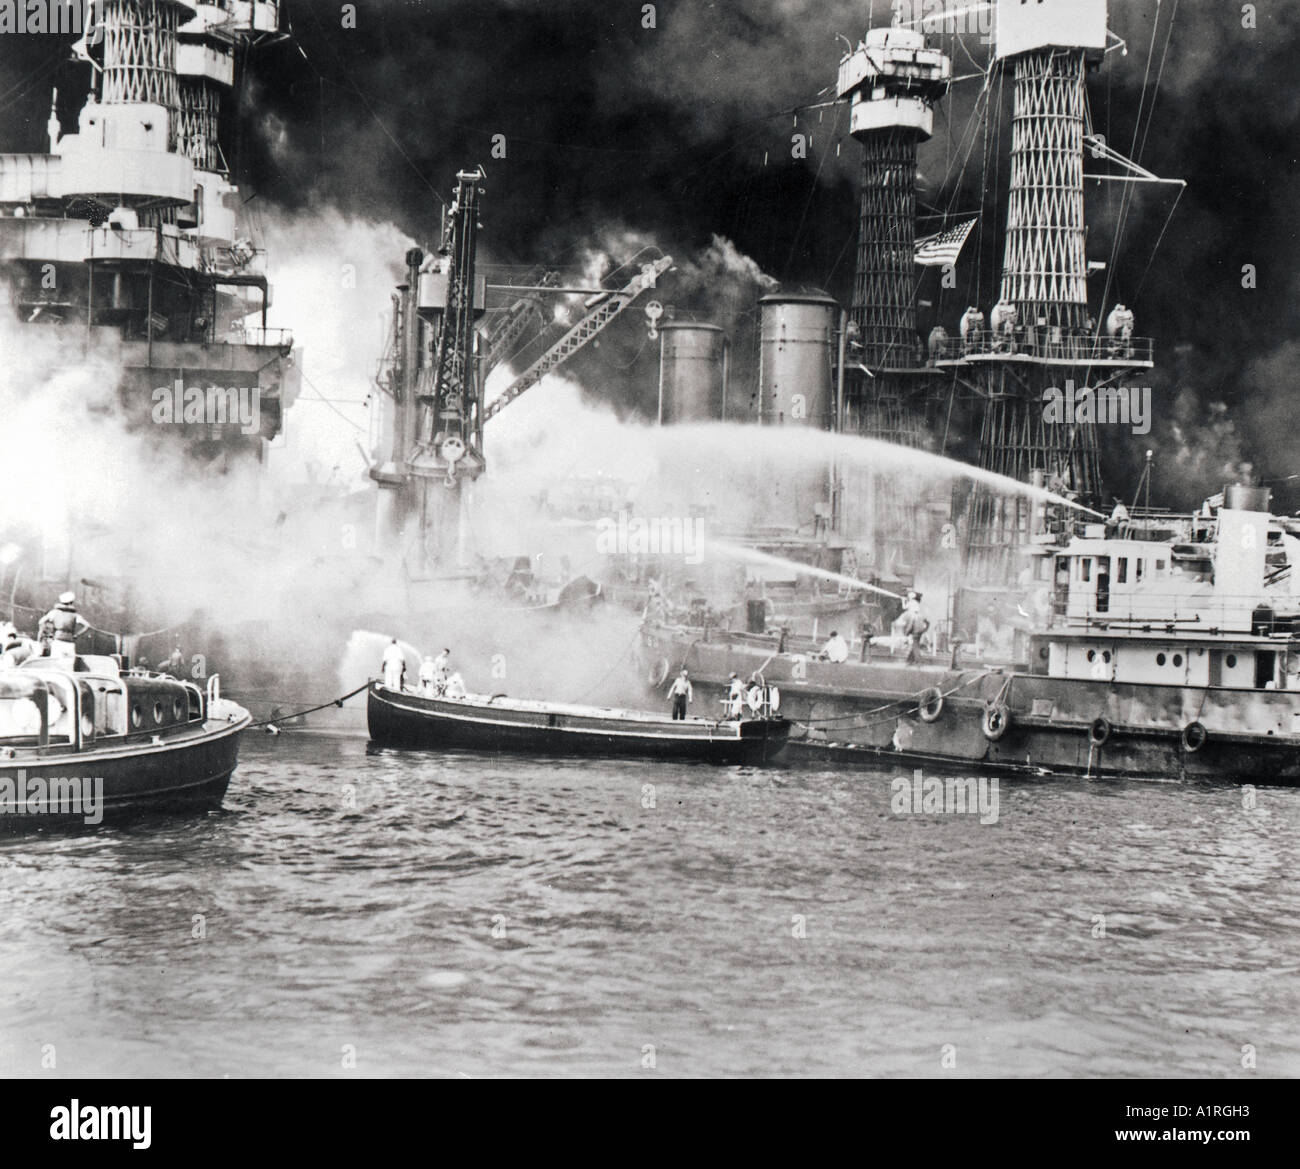 Pearl Harbor pris par surprise lors de l'attaque aérienne japonaise USS WEST VIRGINIA en flammes Le 7 décembre 1941 Banque D'Images